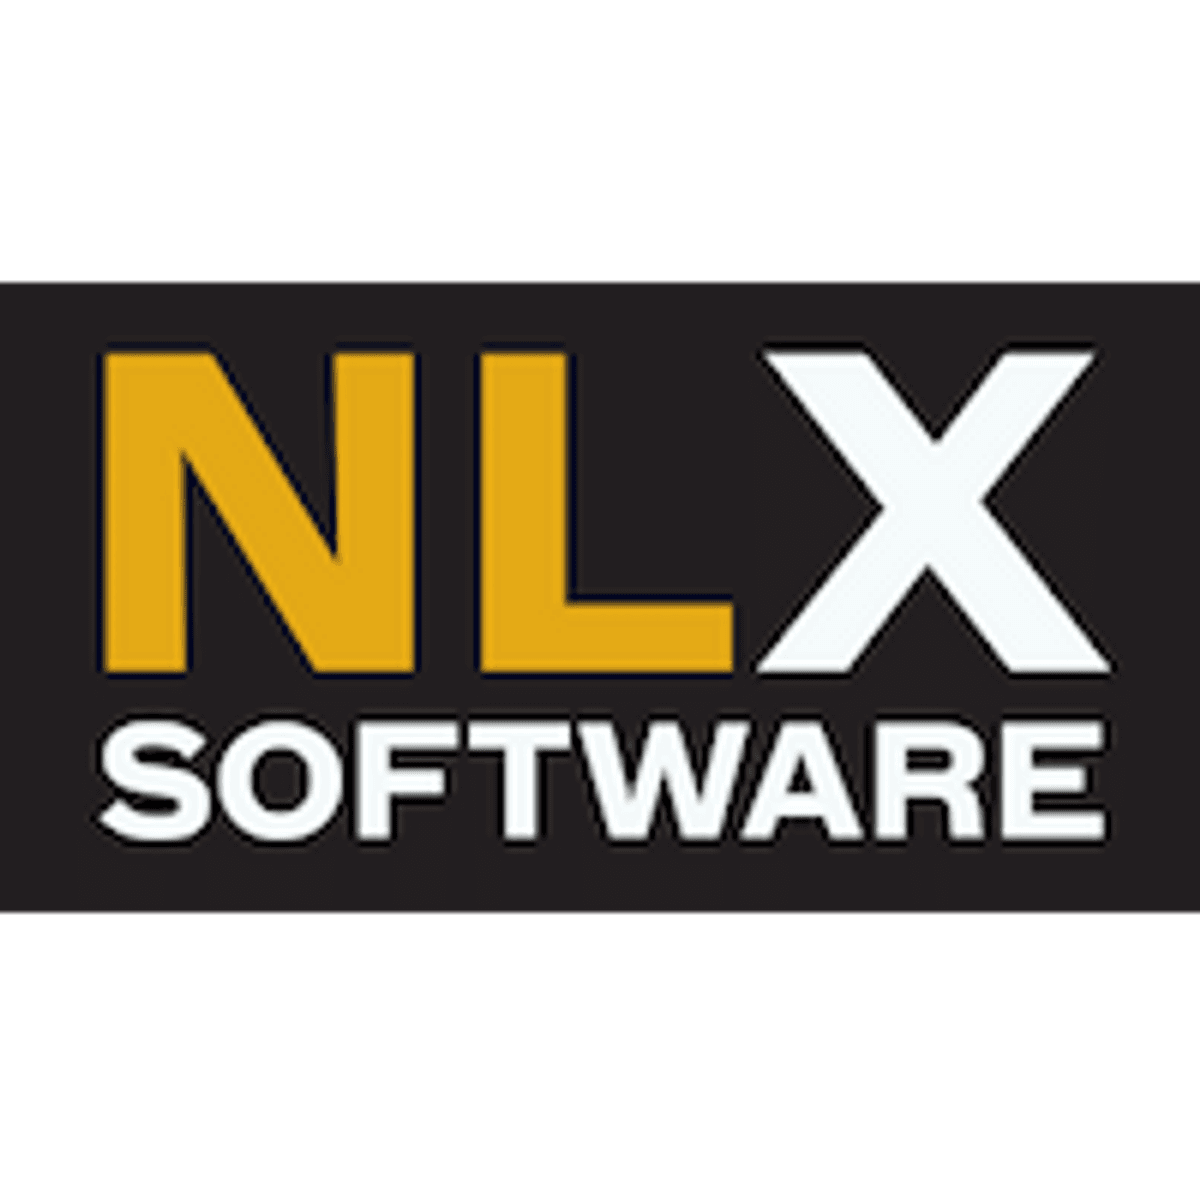 NLX Software maakt digitaal archief beschikbaar voor Microsoft Teams image